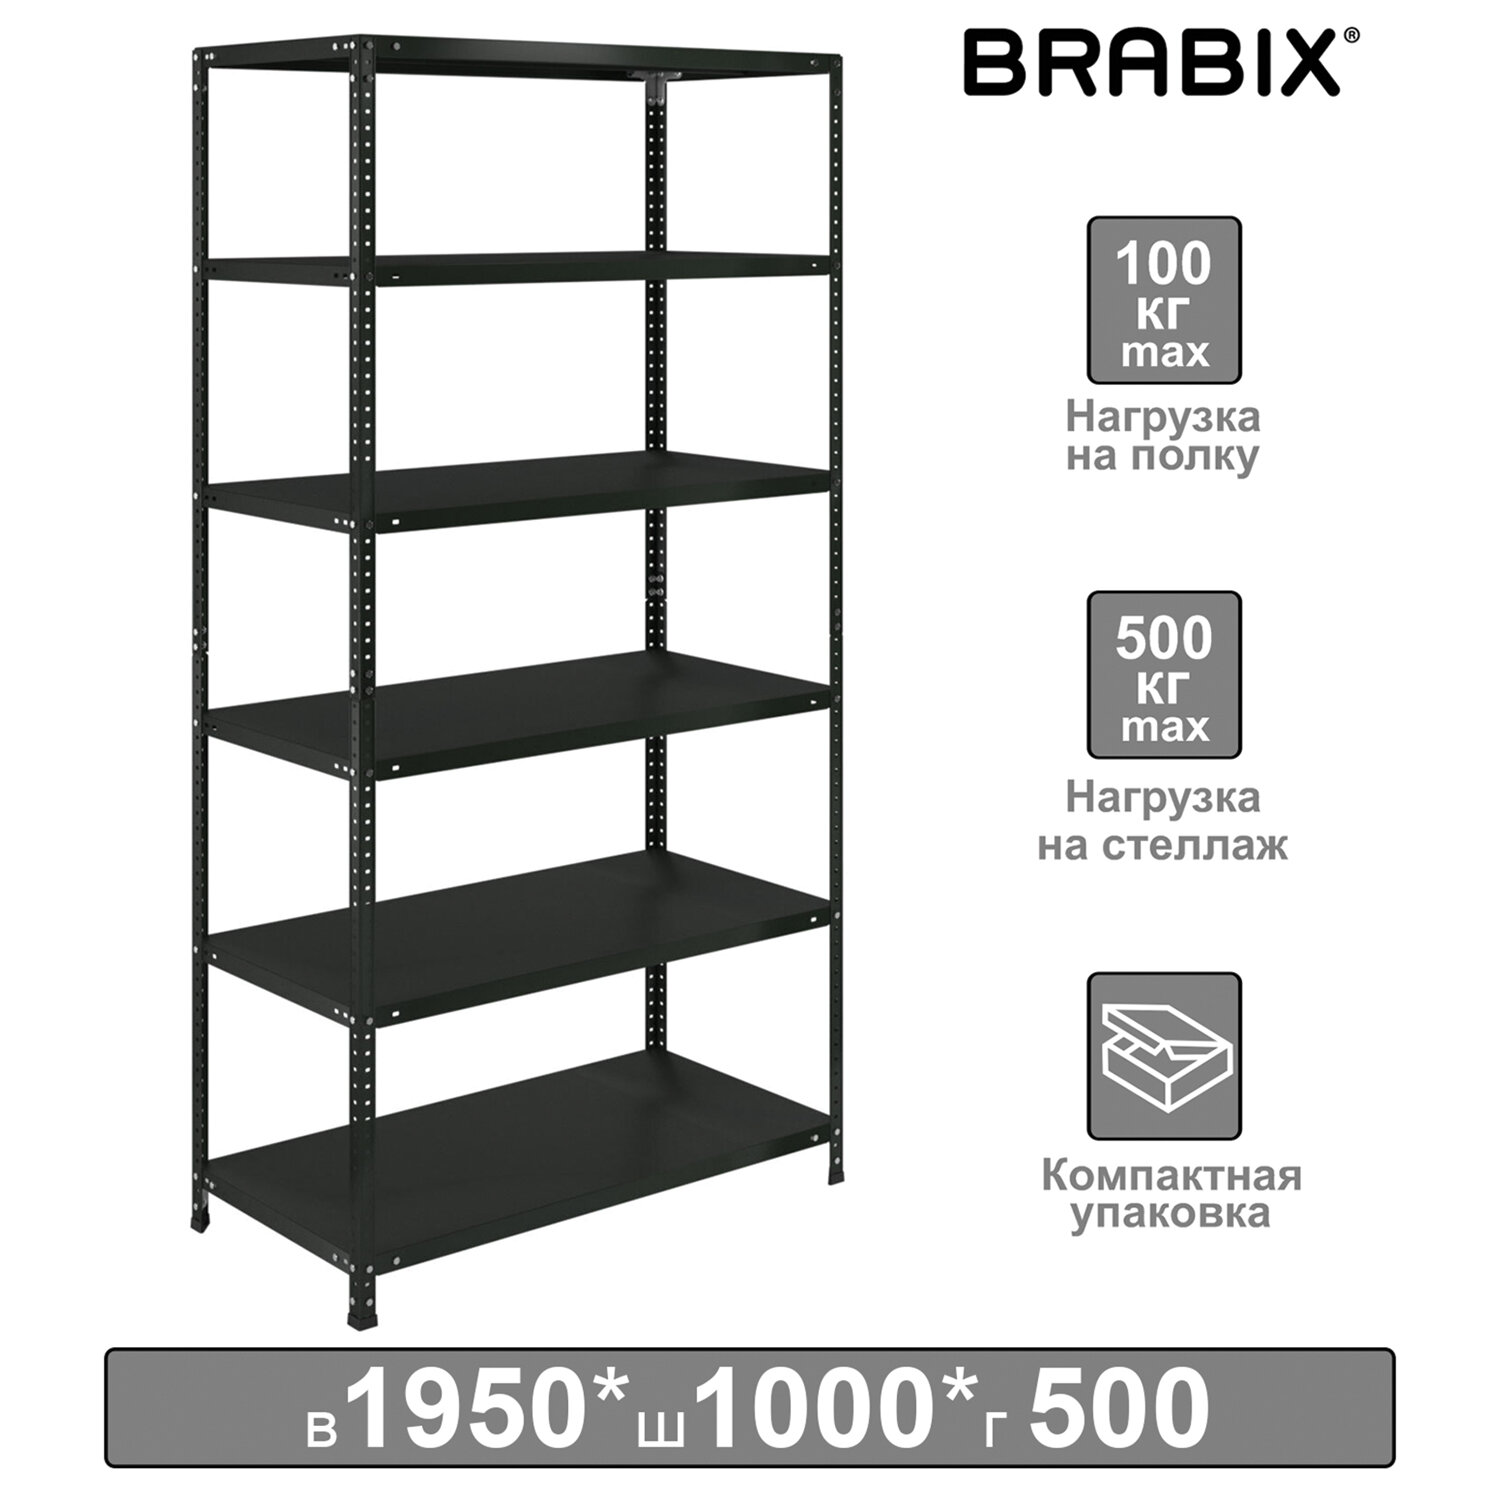 Brabix  BRABIX S240BR245693